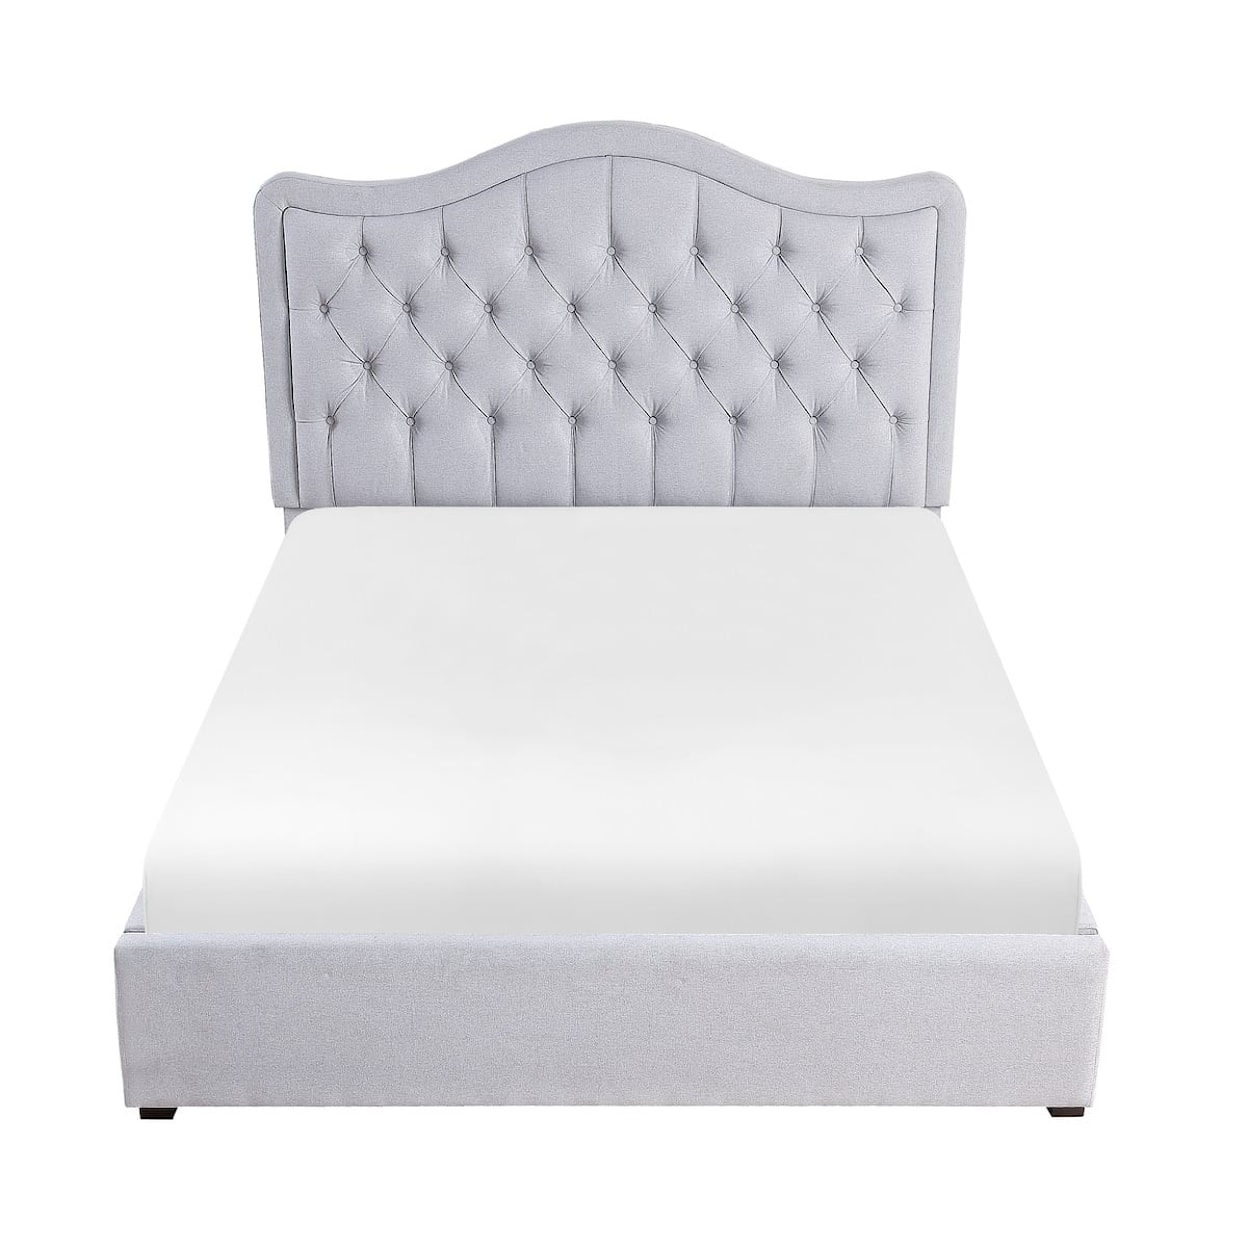 Homelegance Furniture Toddrick Full Platform Bed